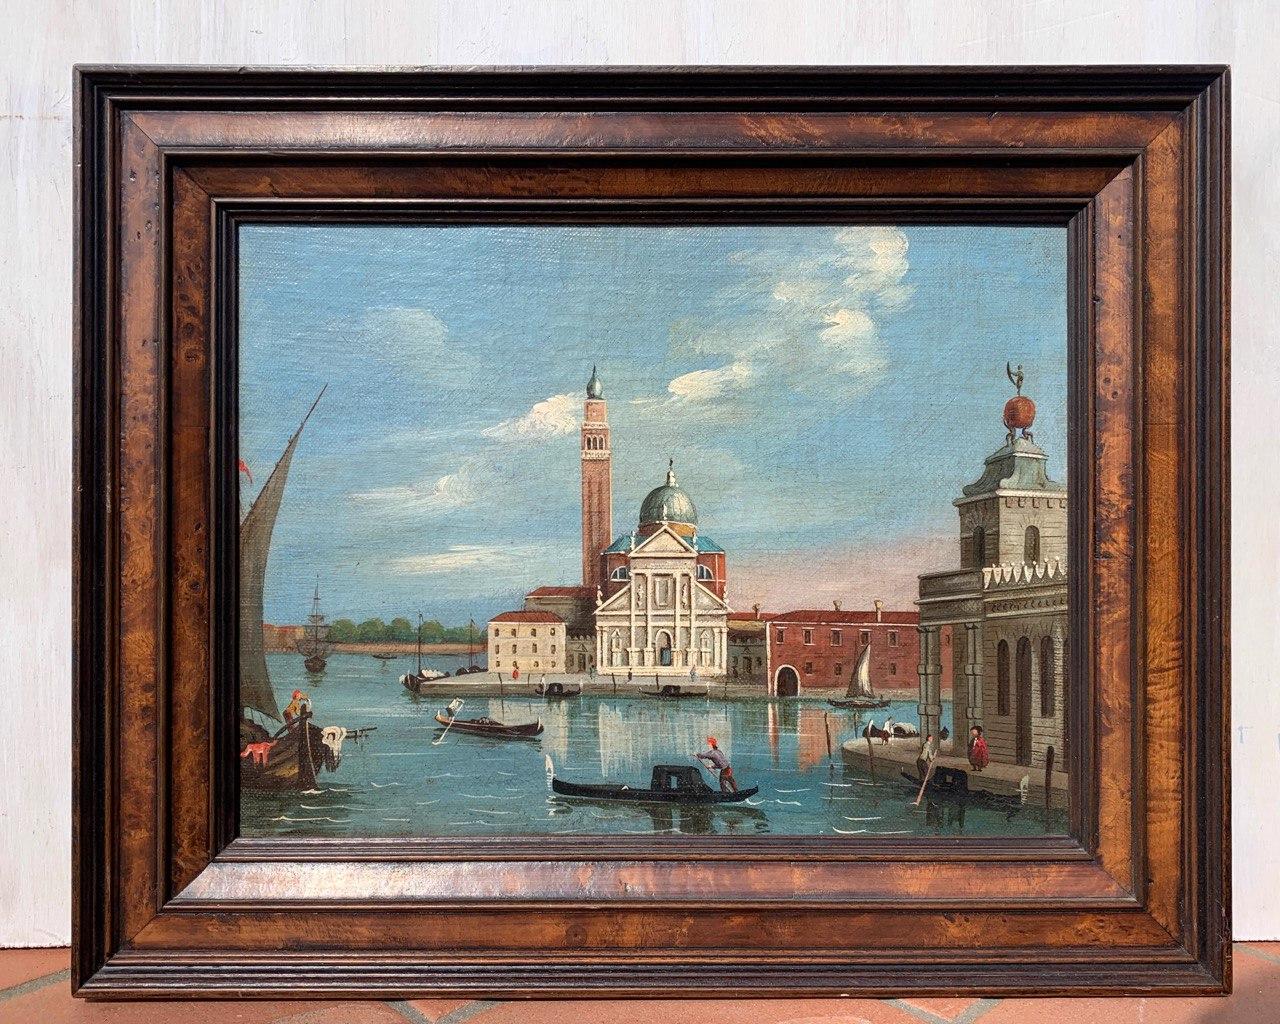 Venezianischer Vedutenist (Canaletto-Anhänger) – Malerei des späten 19. Jahrhunderts – Venedig – Painting von Giovanni Antonio Canal (Canaletto)